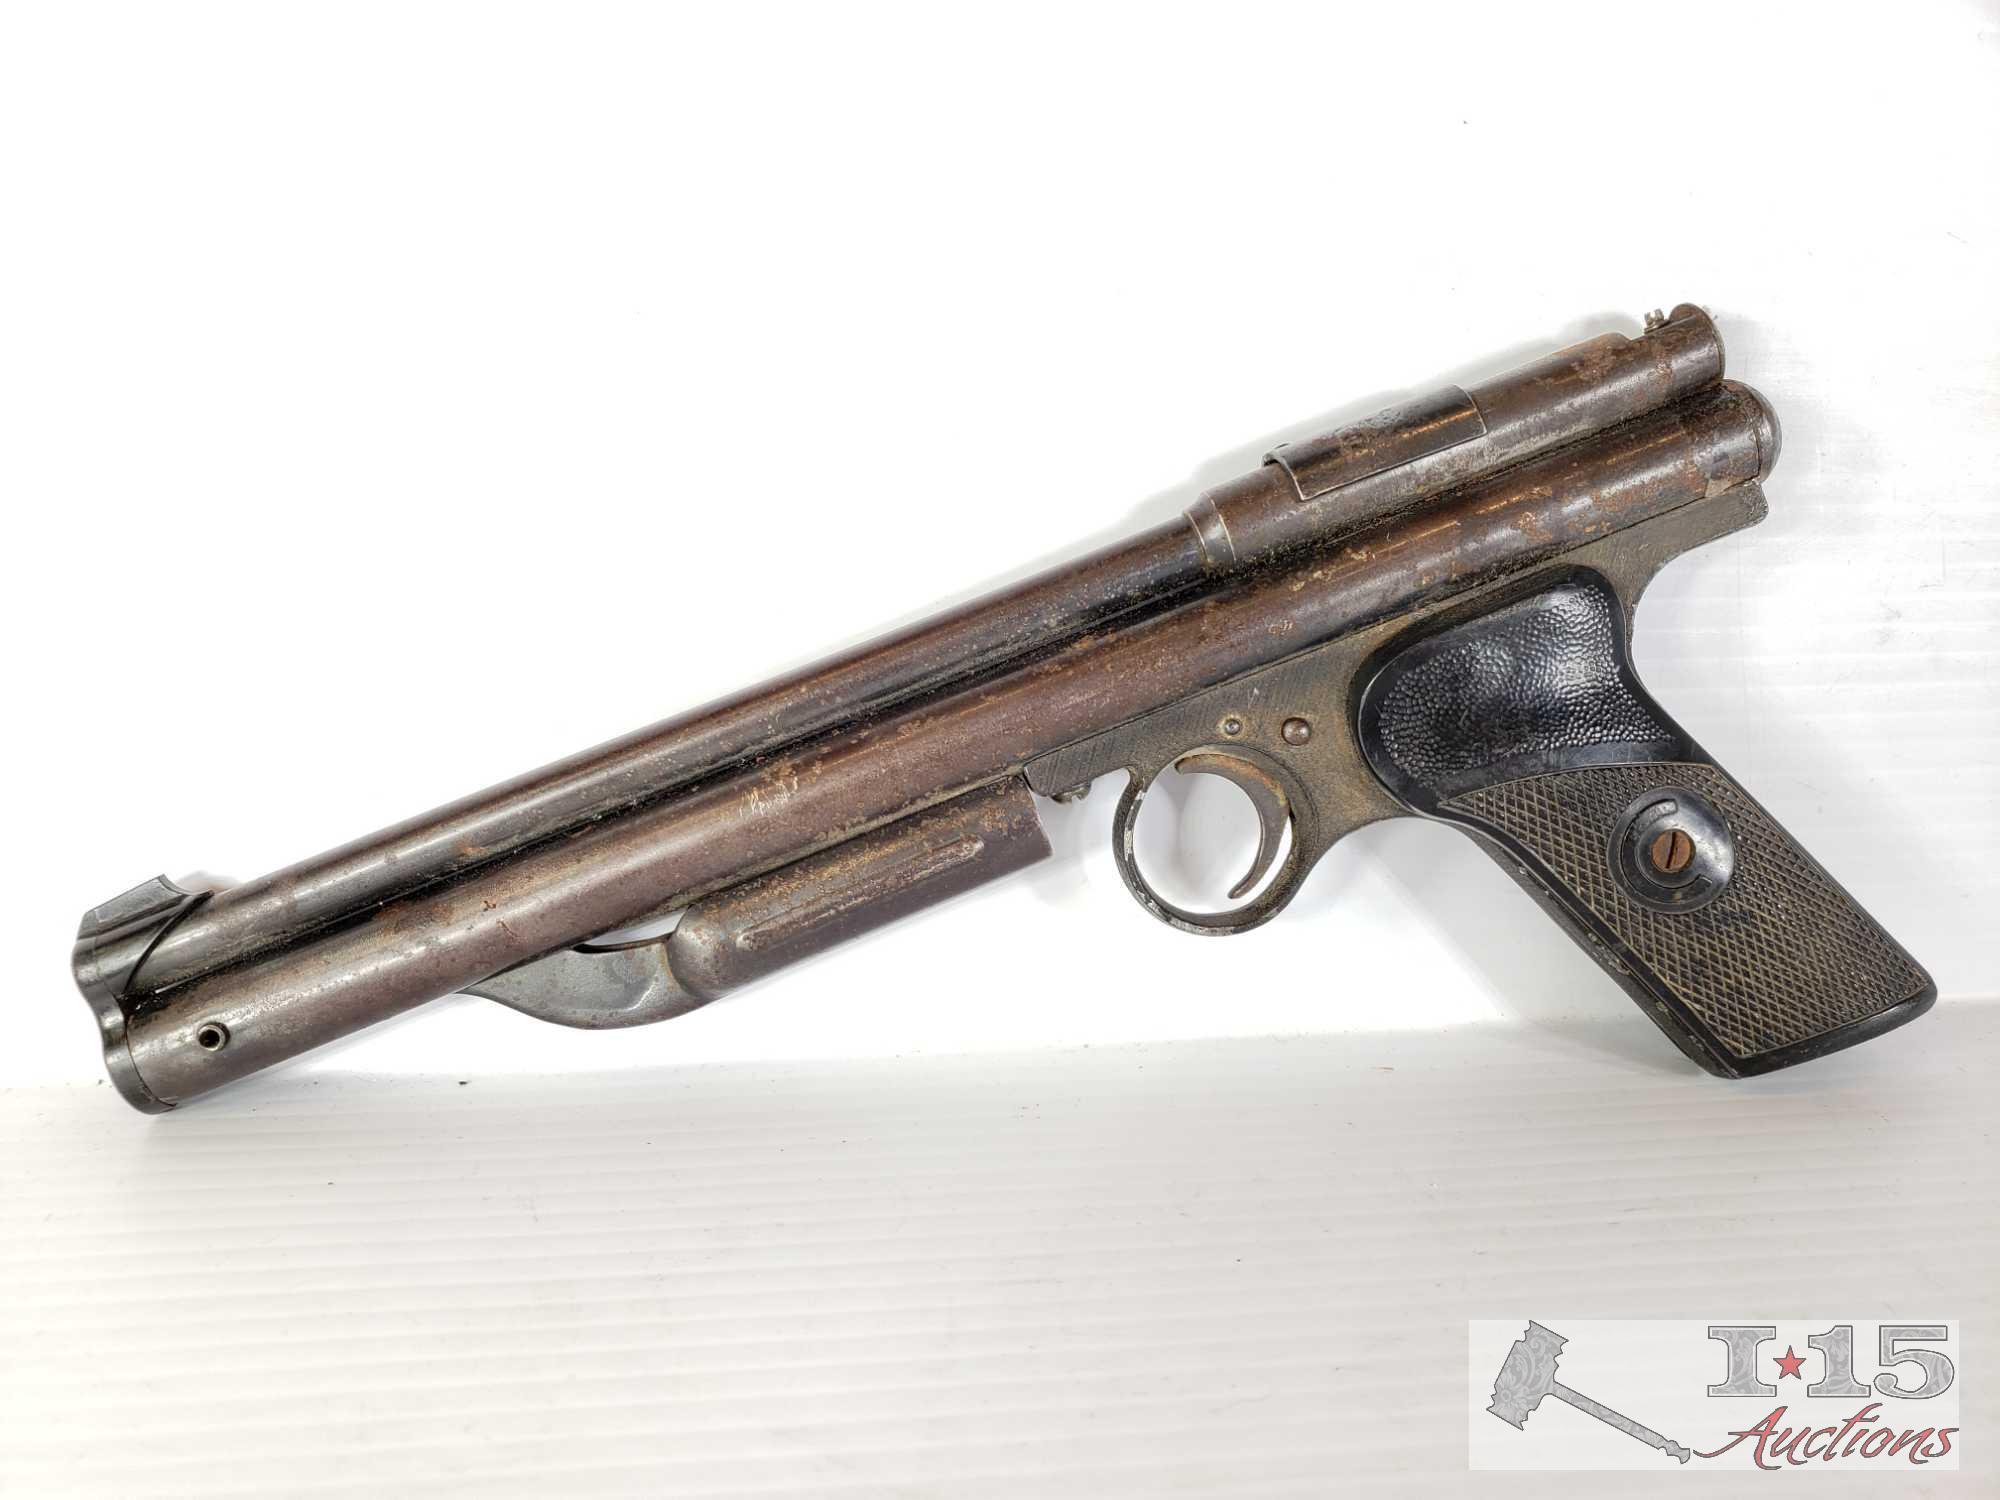 Vintage Crossman 137 BB Gun and Marksman BB Gun